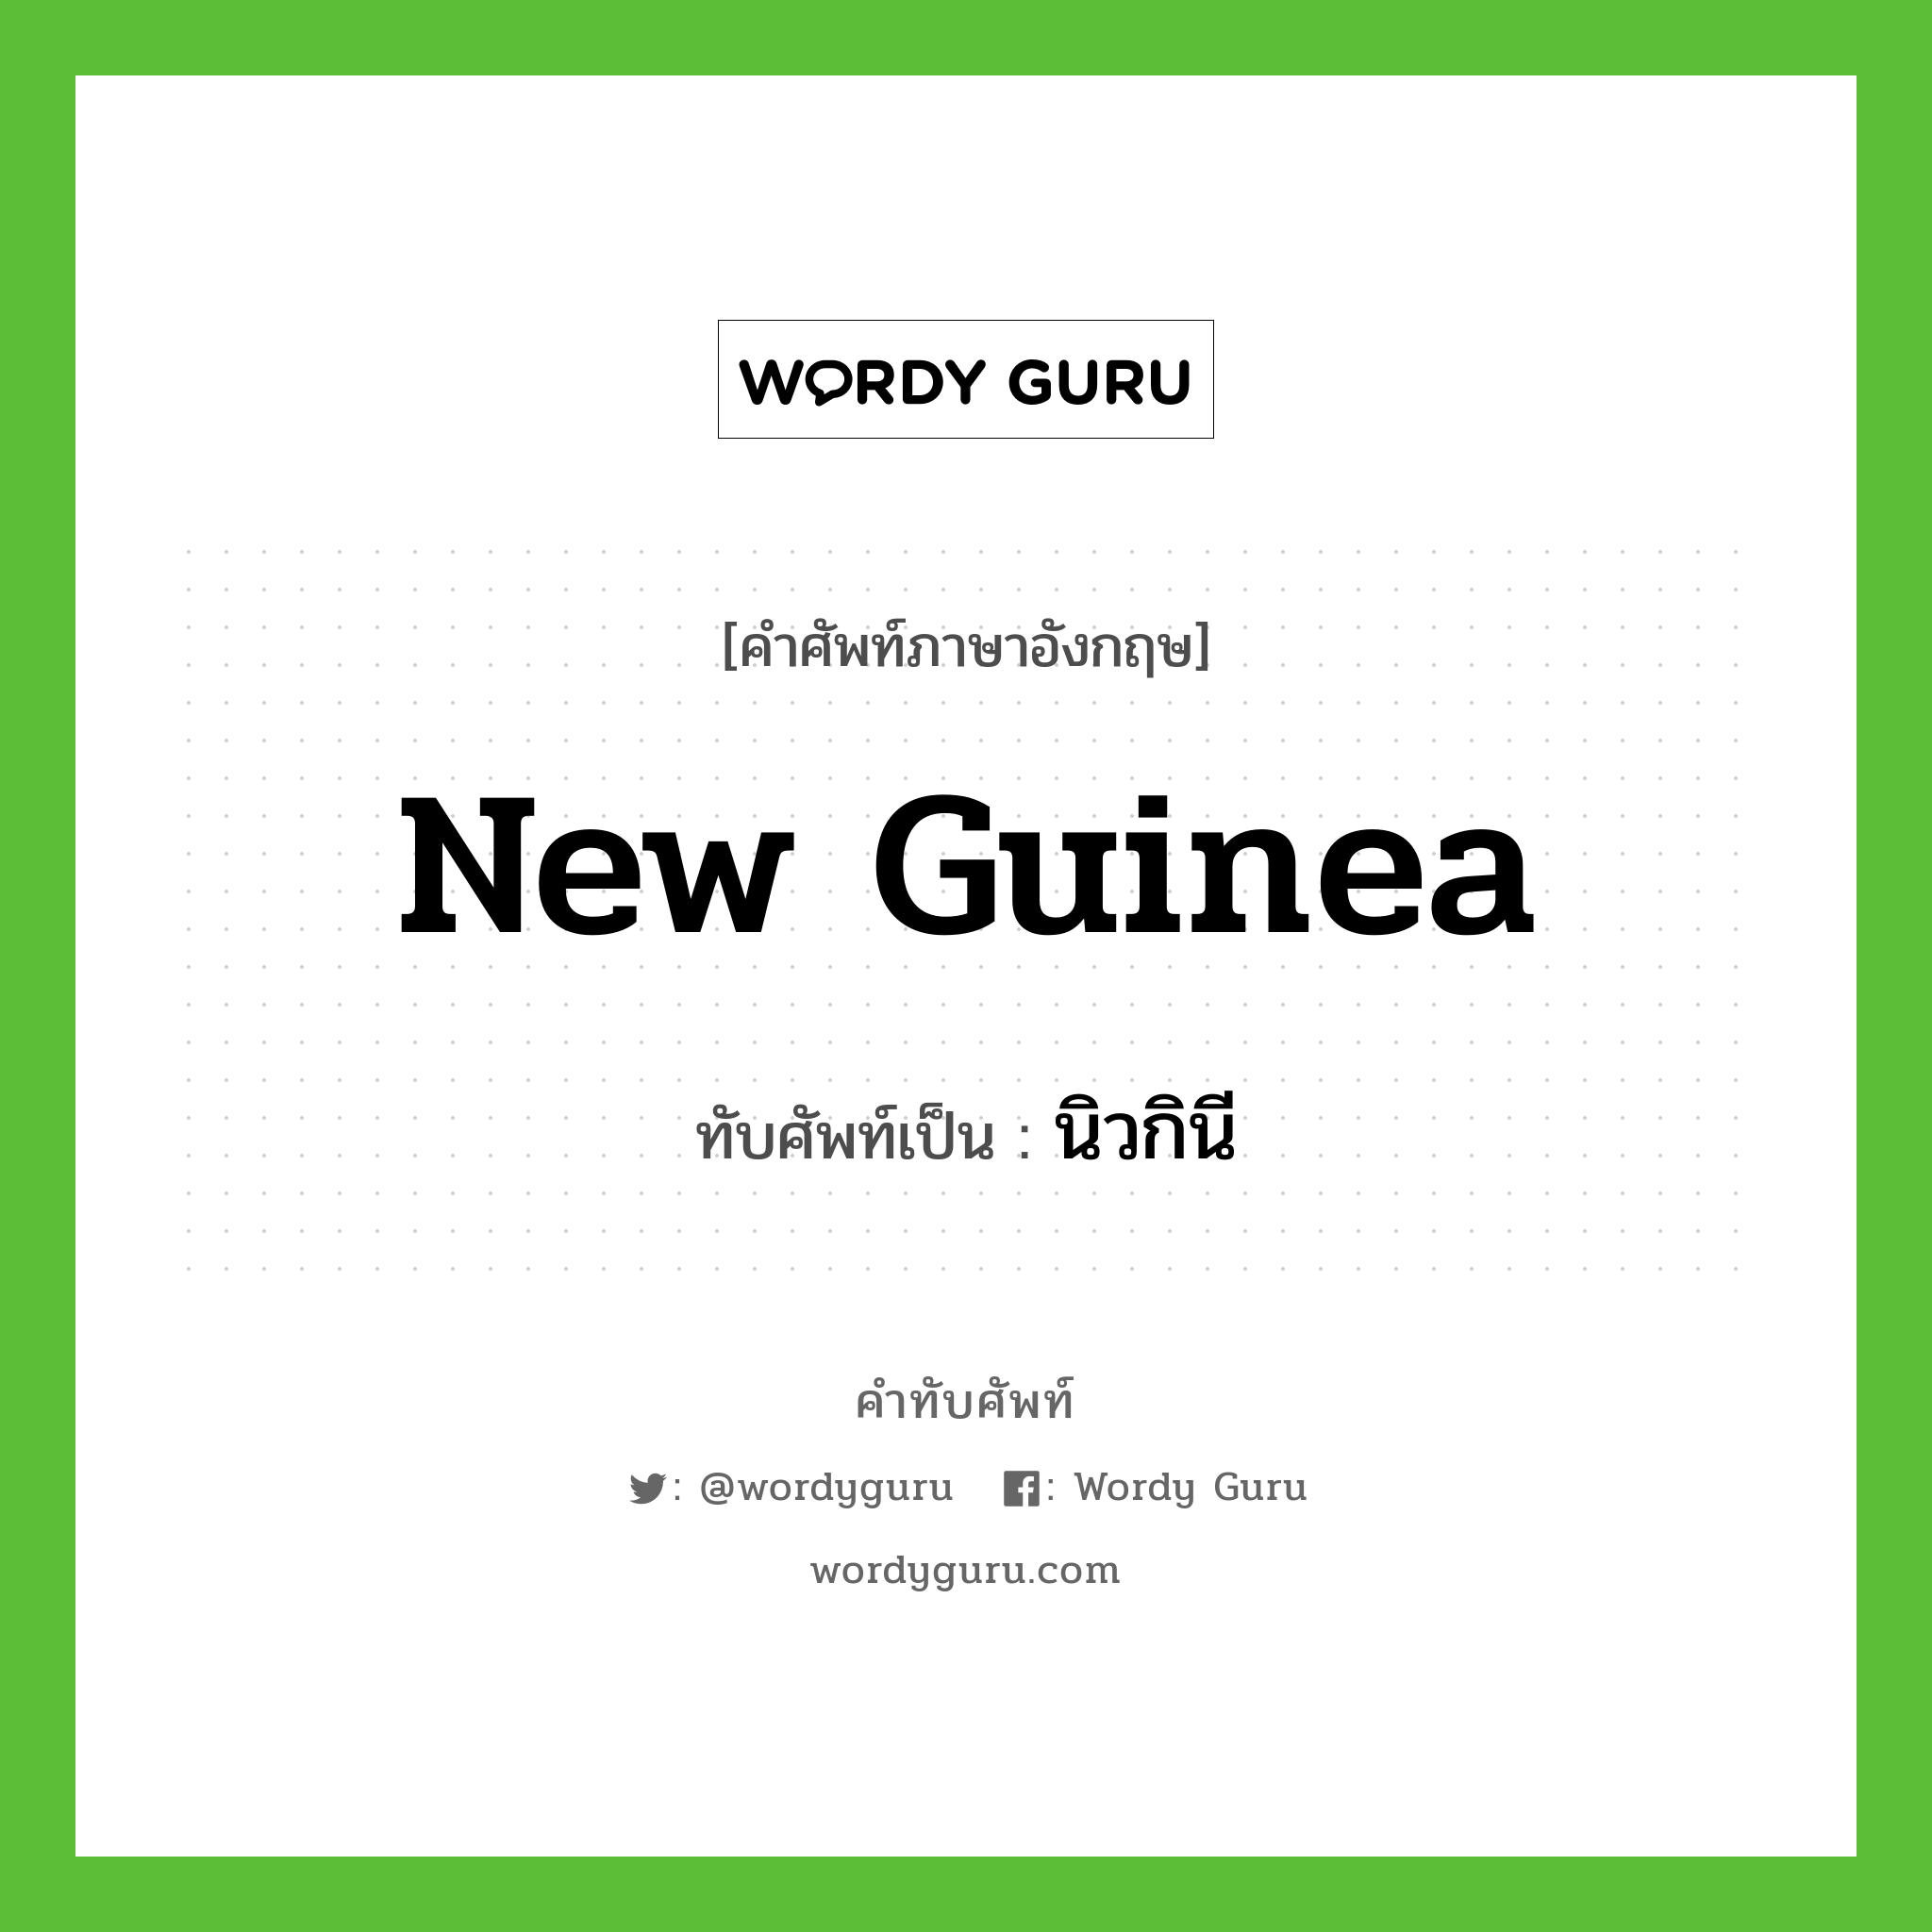 New Guinea เขียนเป็นคำไทยว่าอะไร?, คำศัพท์ภาษาอังกฤษ New Guinea ทับศัพท์เป็น นิวกินี